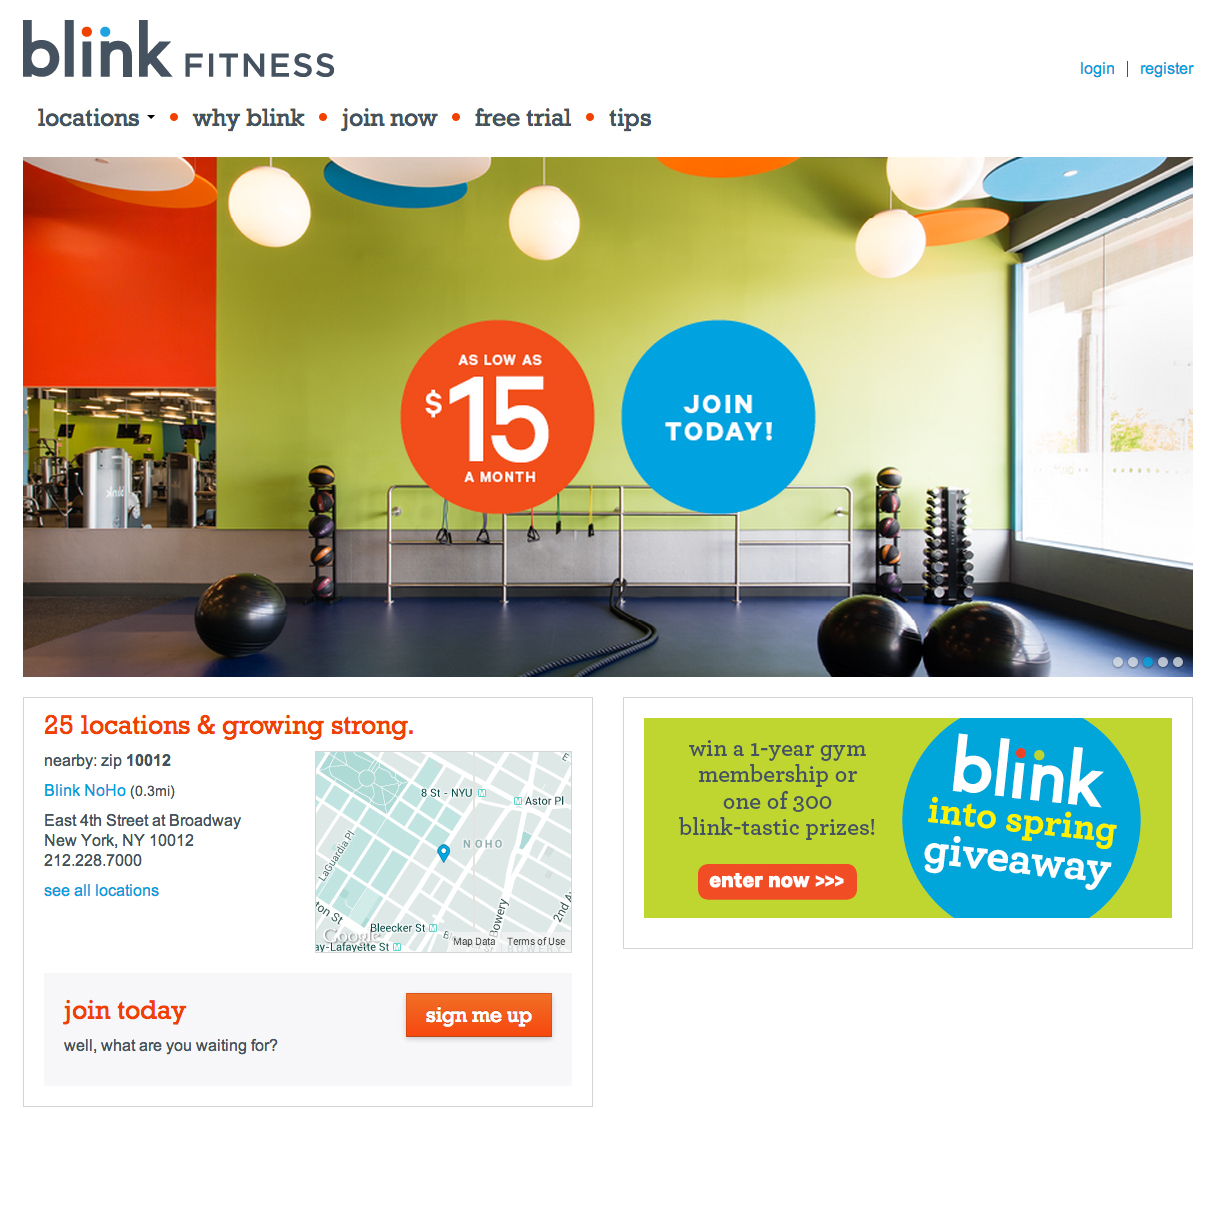 Blink Fitness